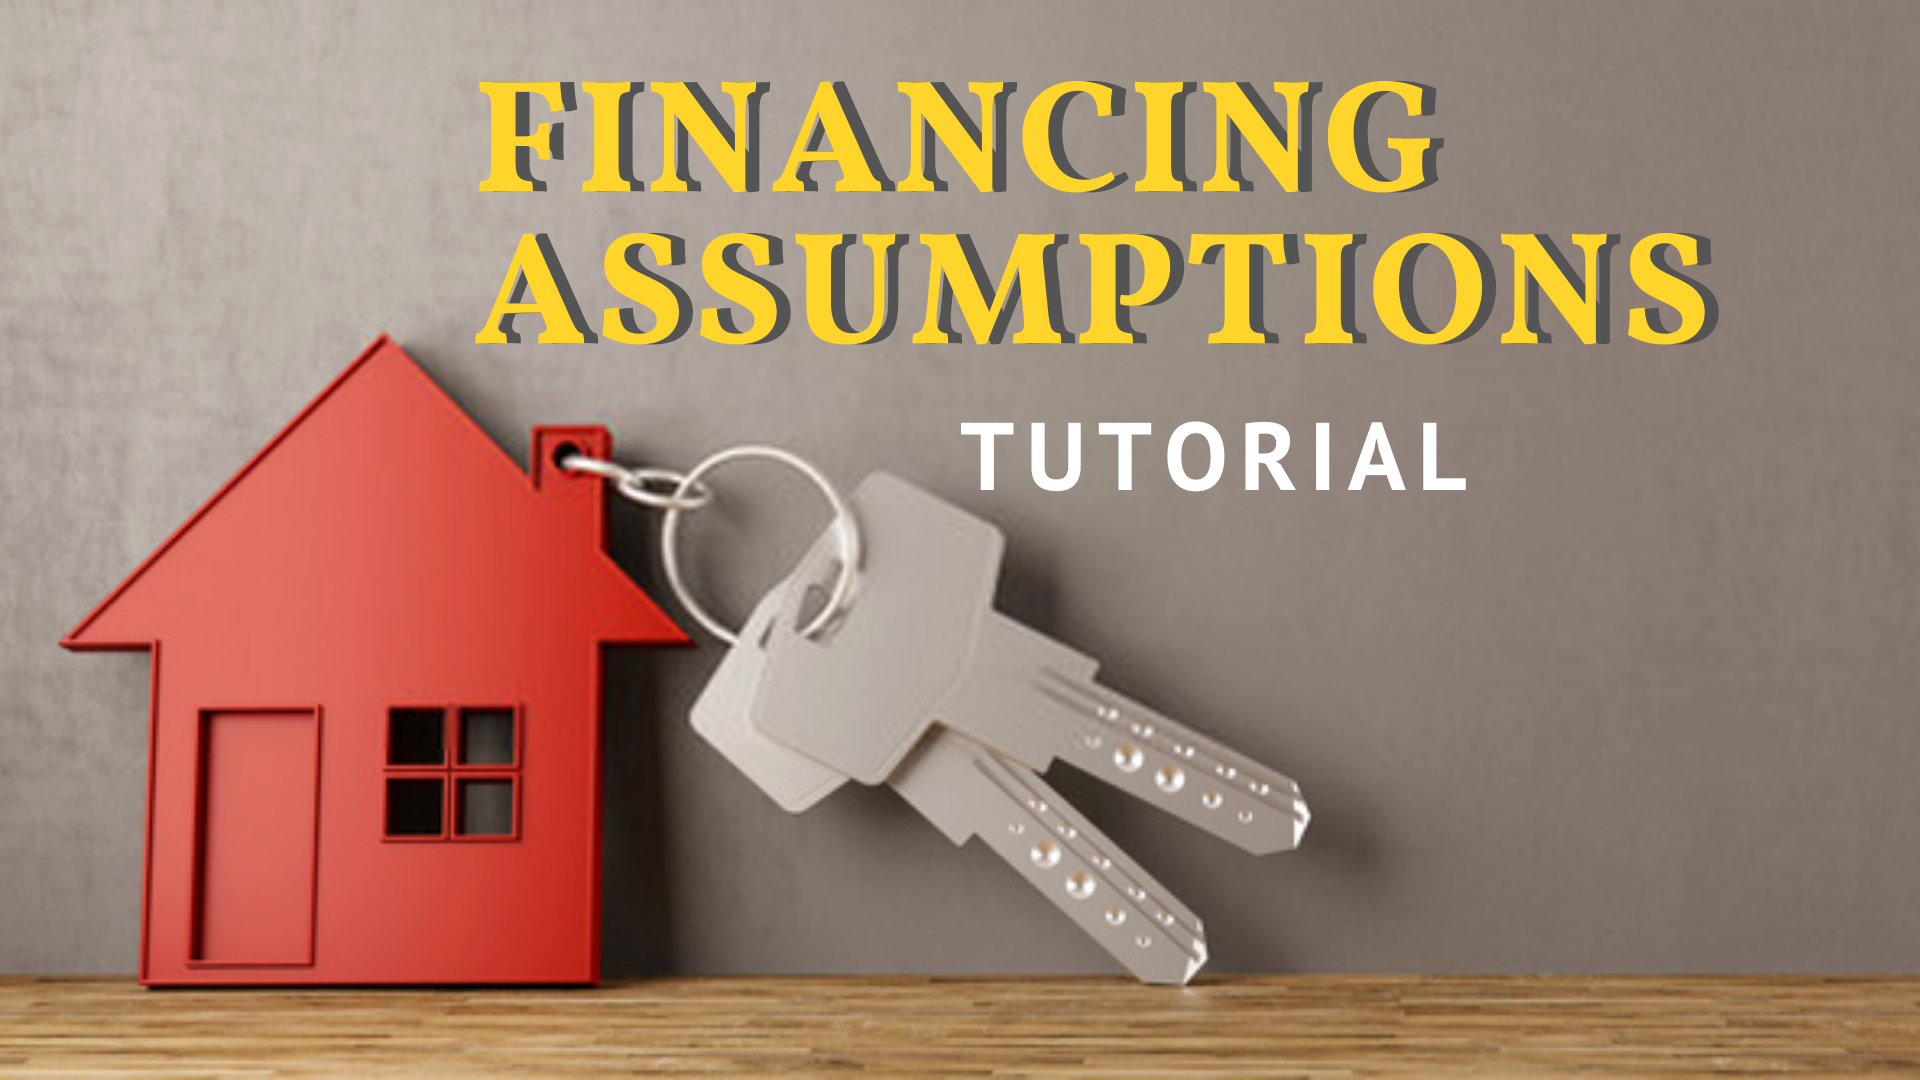 financing assumptions tutorial banner